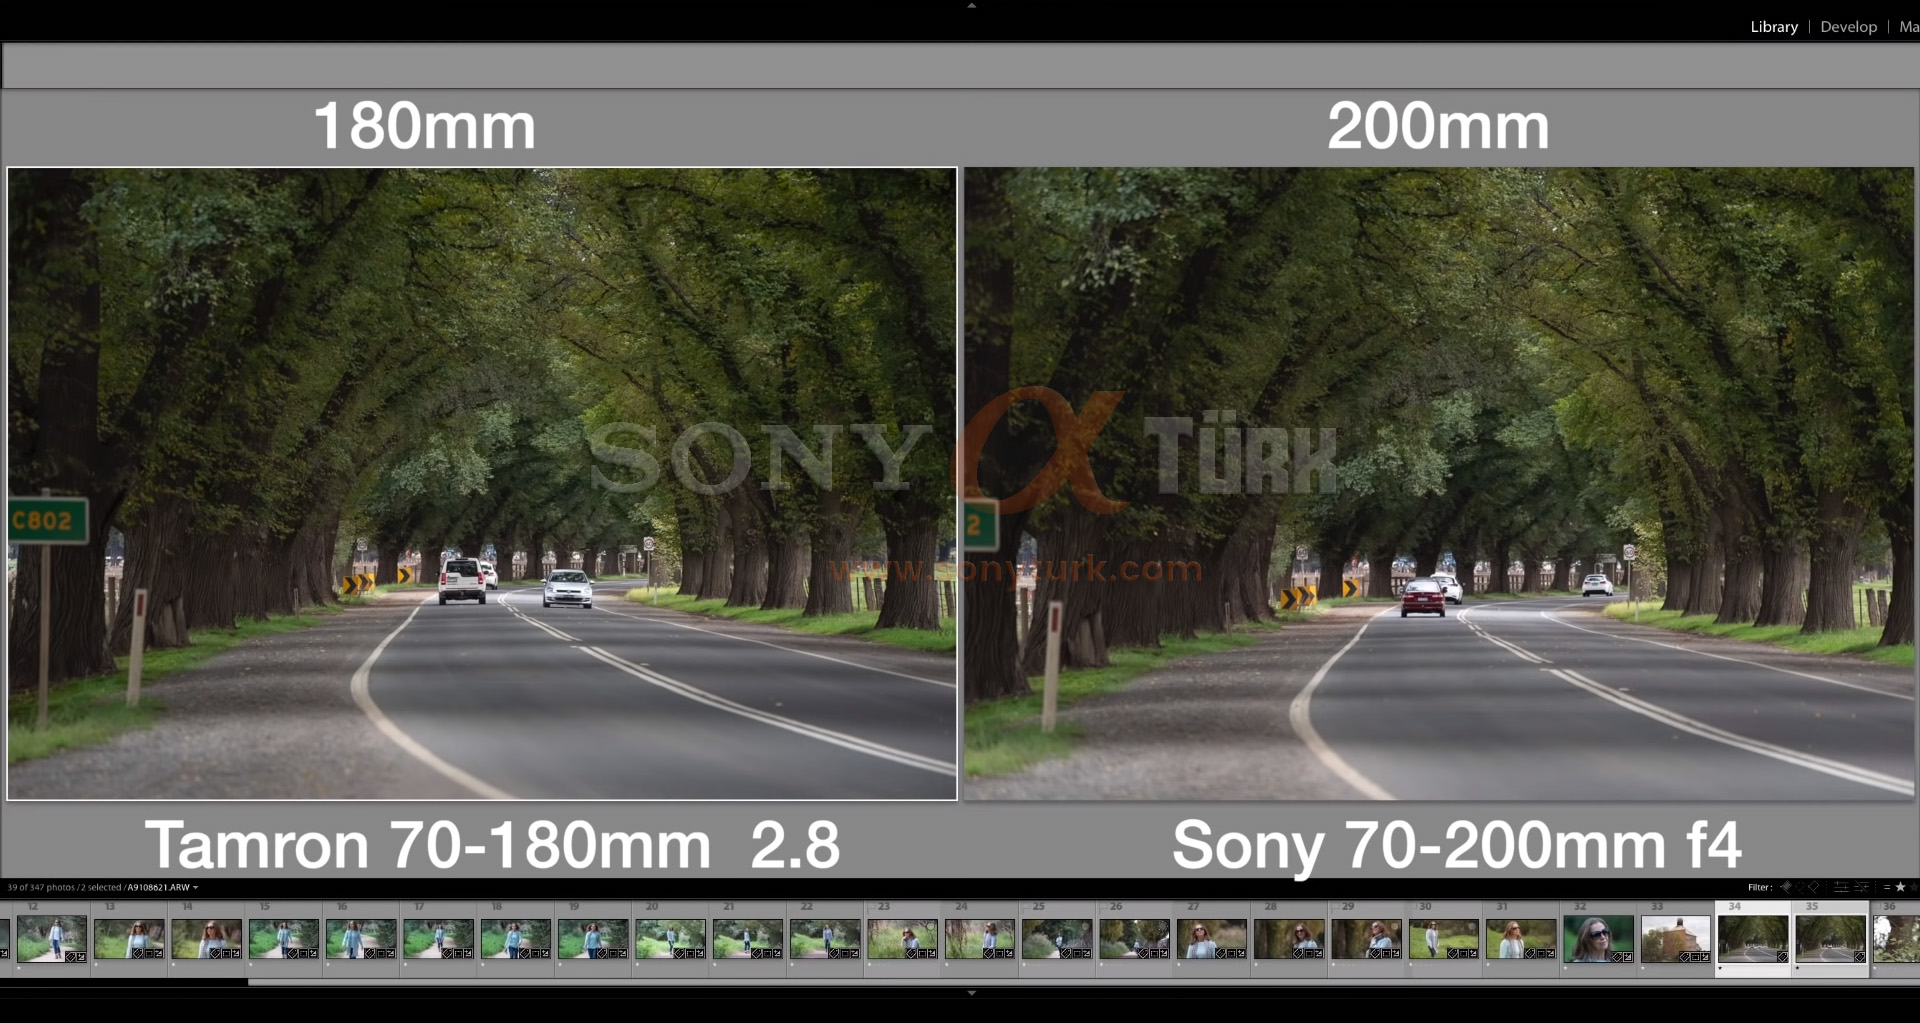 sonyturk Tamron 70-180mm vs Sony 70-20mm f2.8.jpg